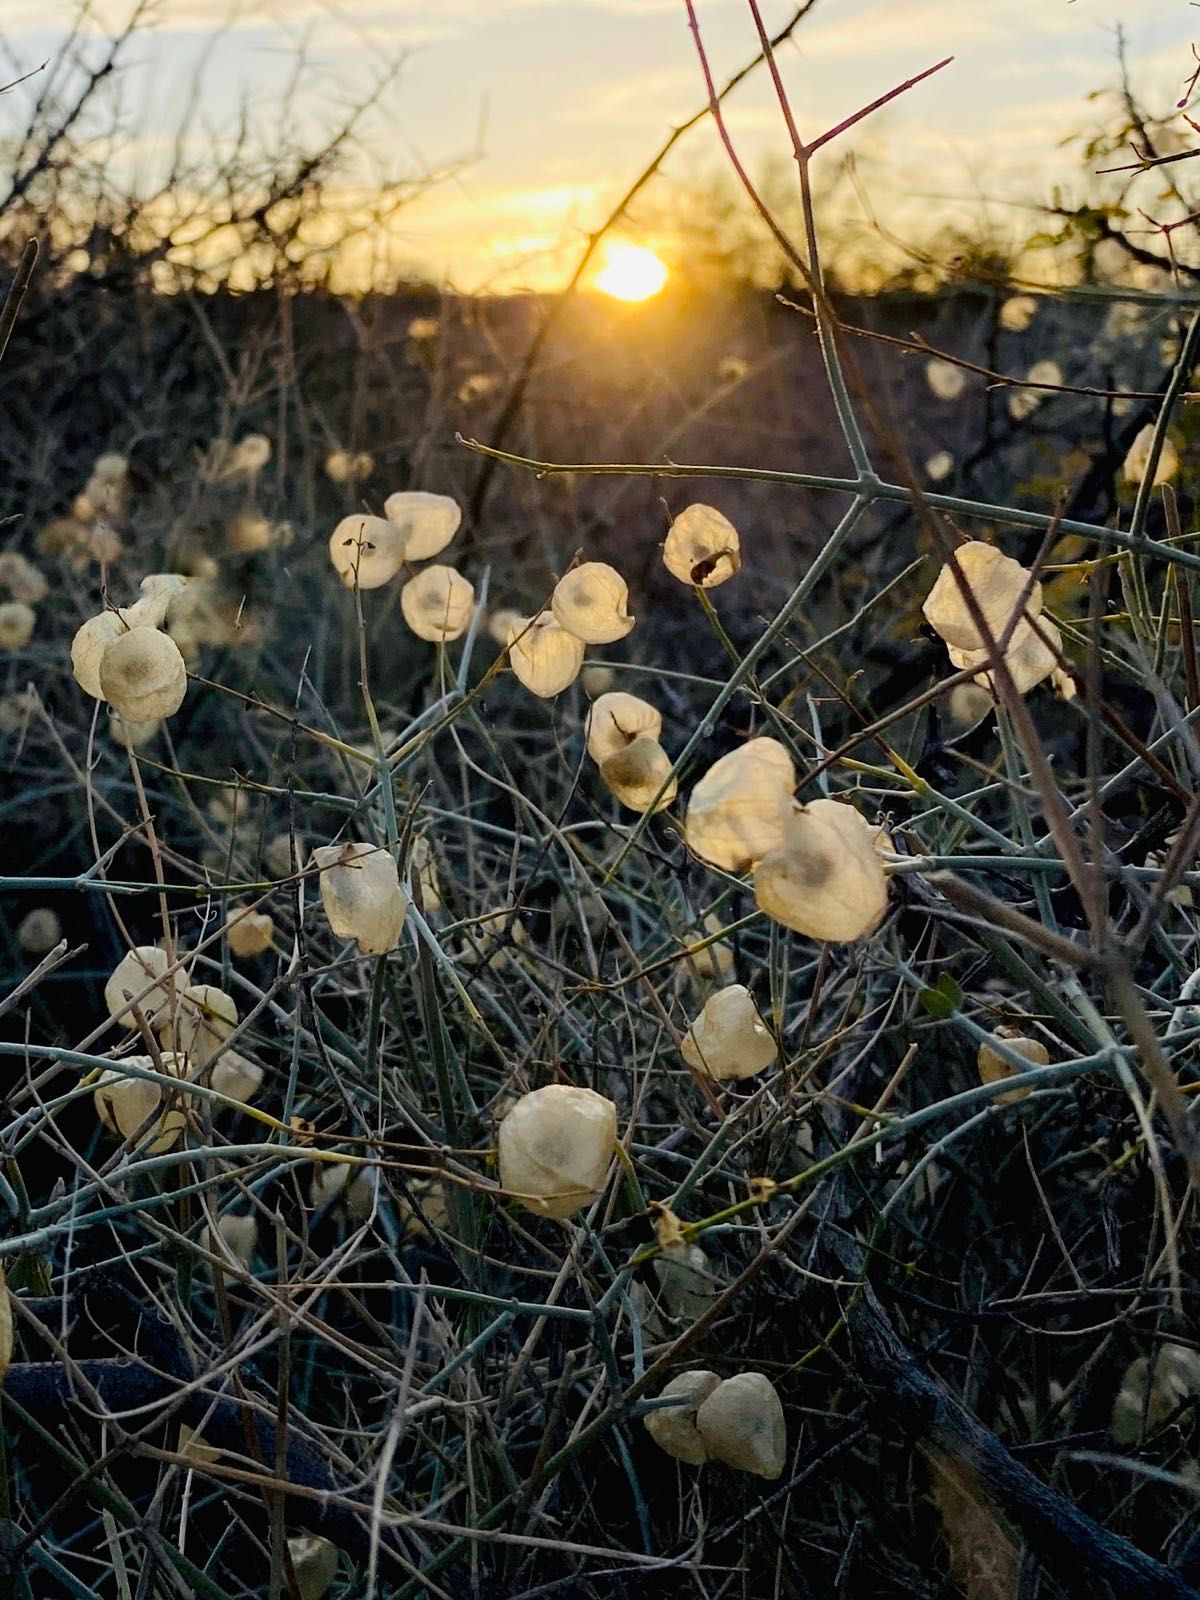 the land of a thousand suns - kofa wildlife refuge arizona